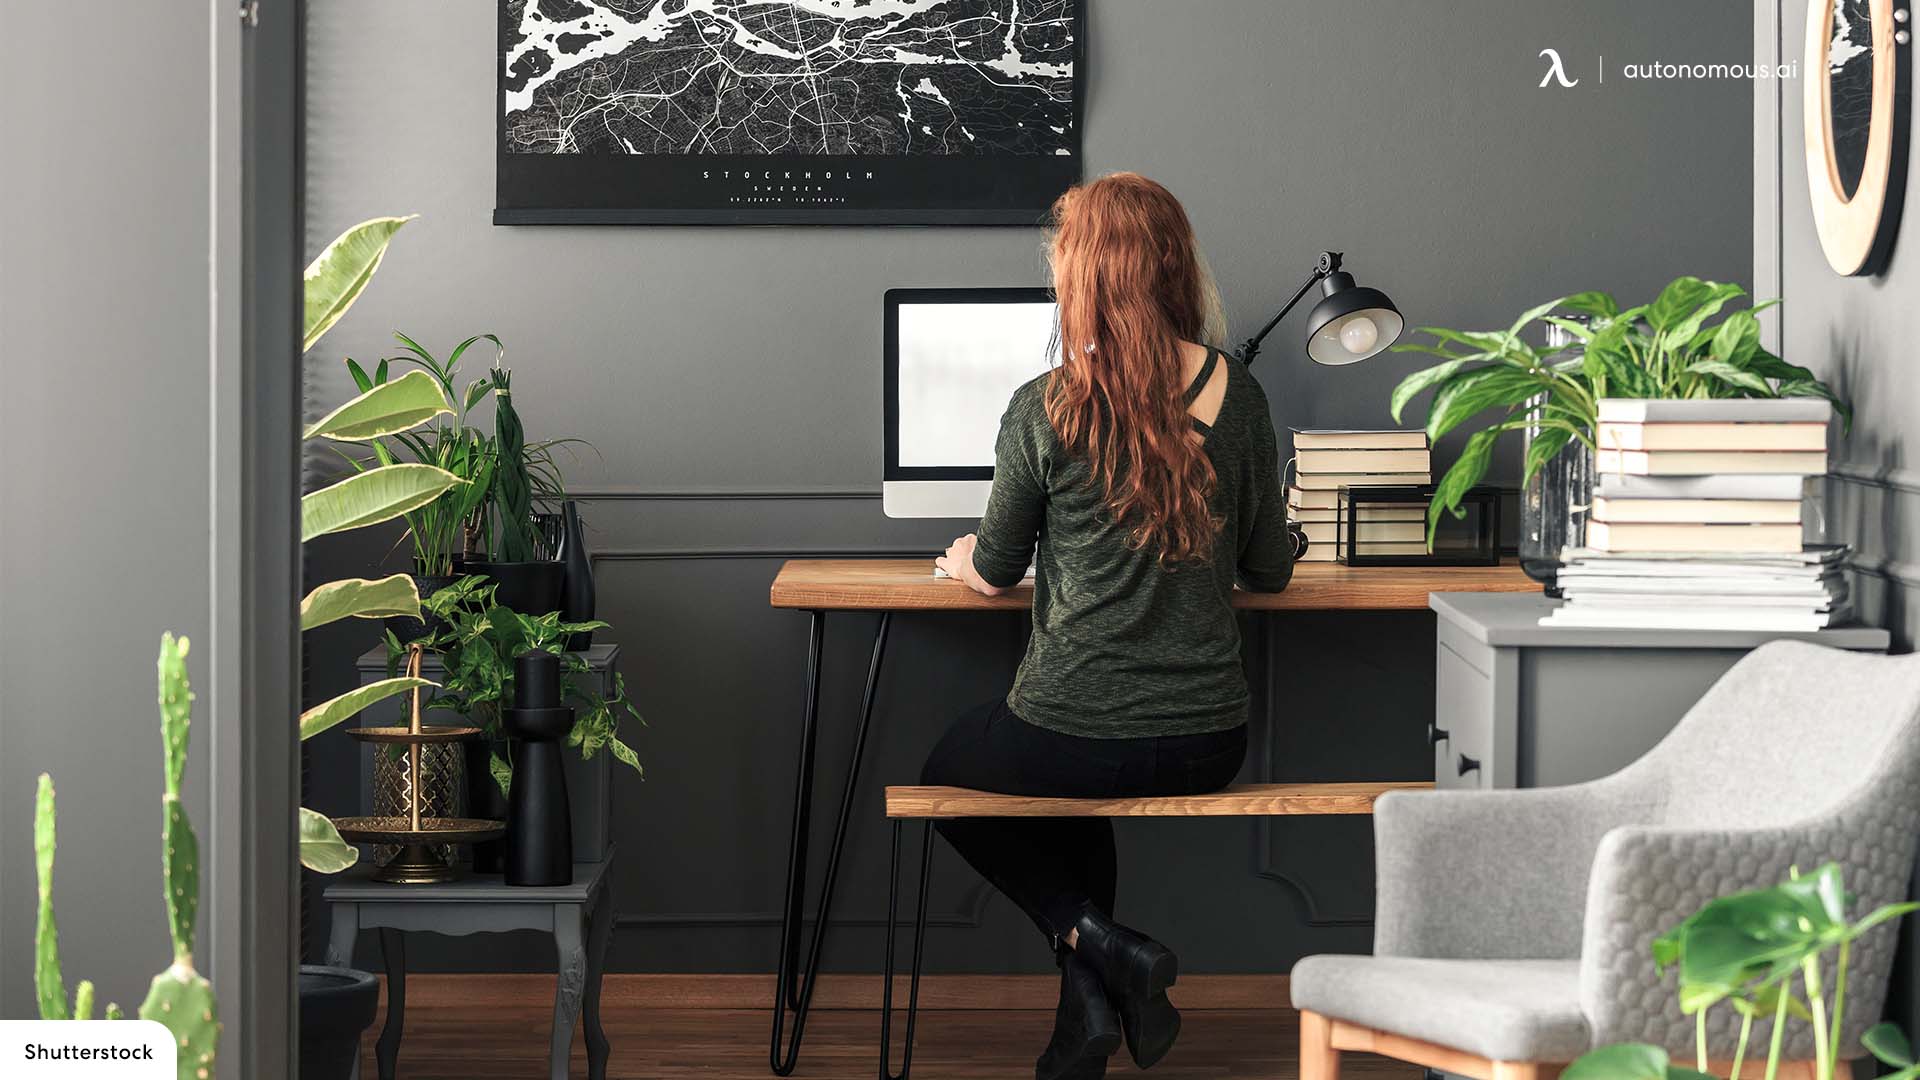 6 Most Modern Corner Desks in 2022